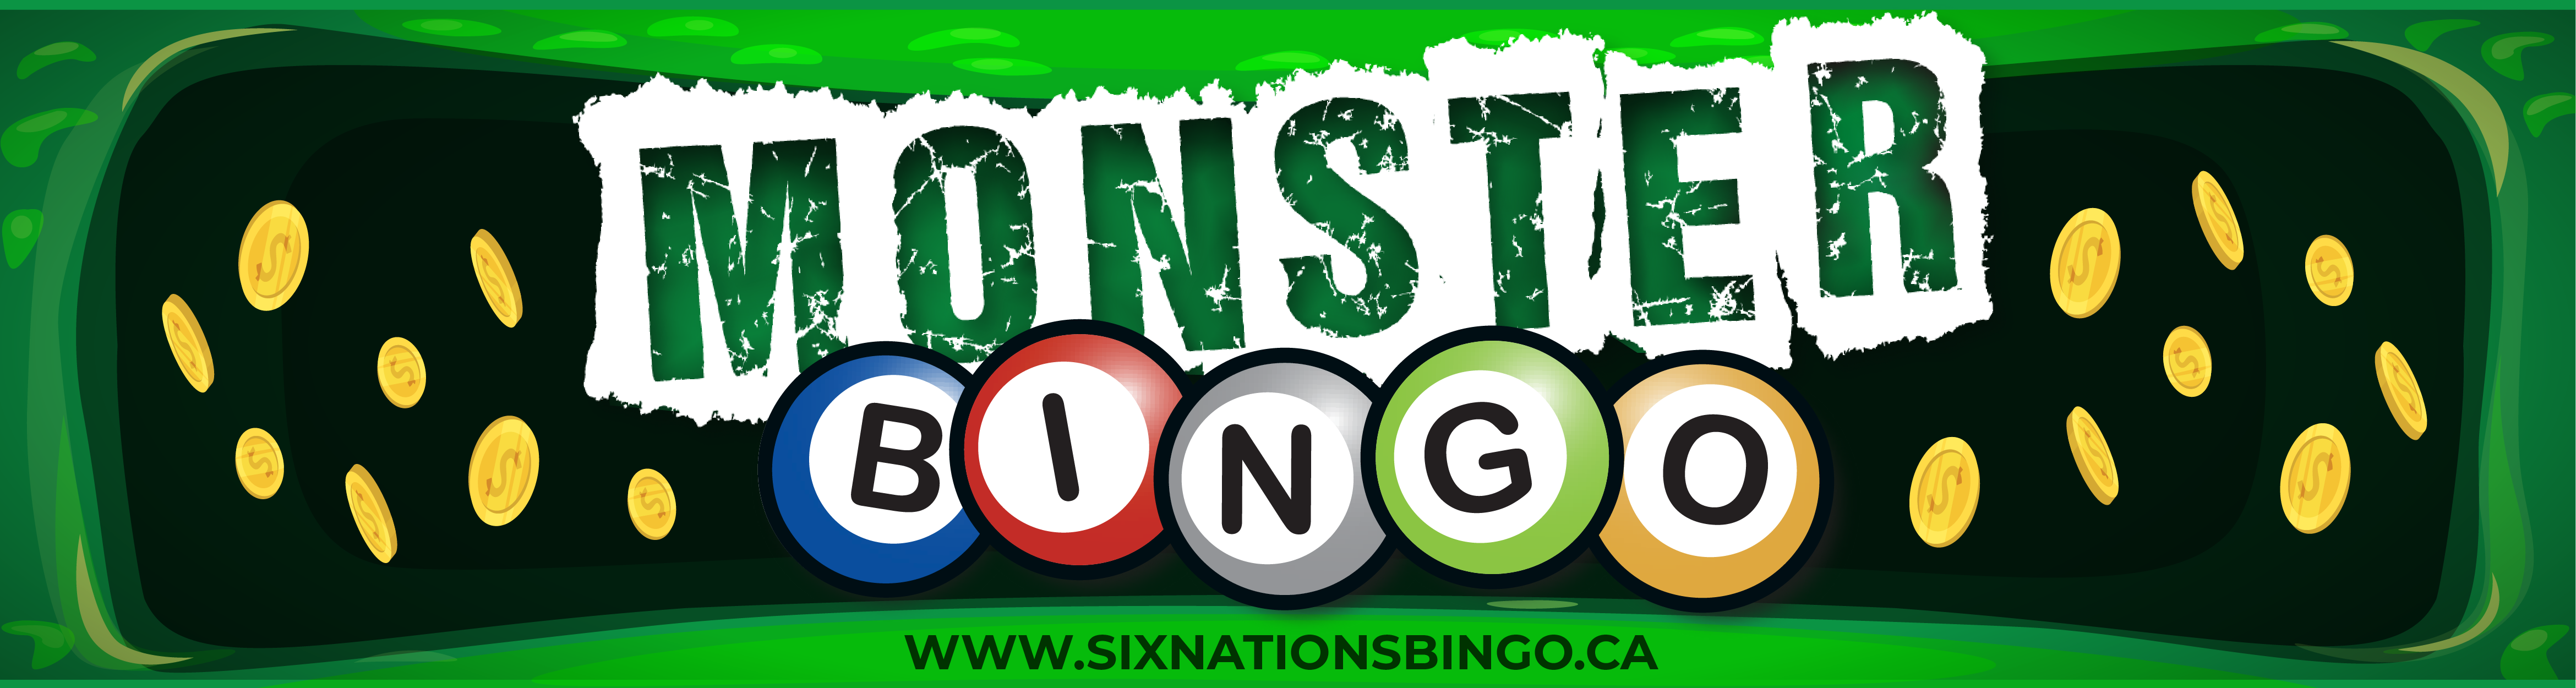 Six Nations Bingo MONSTER Bingo!